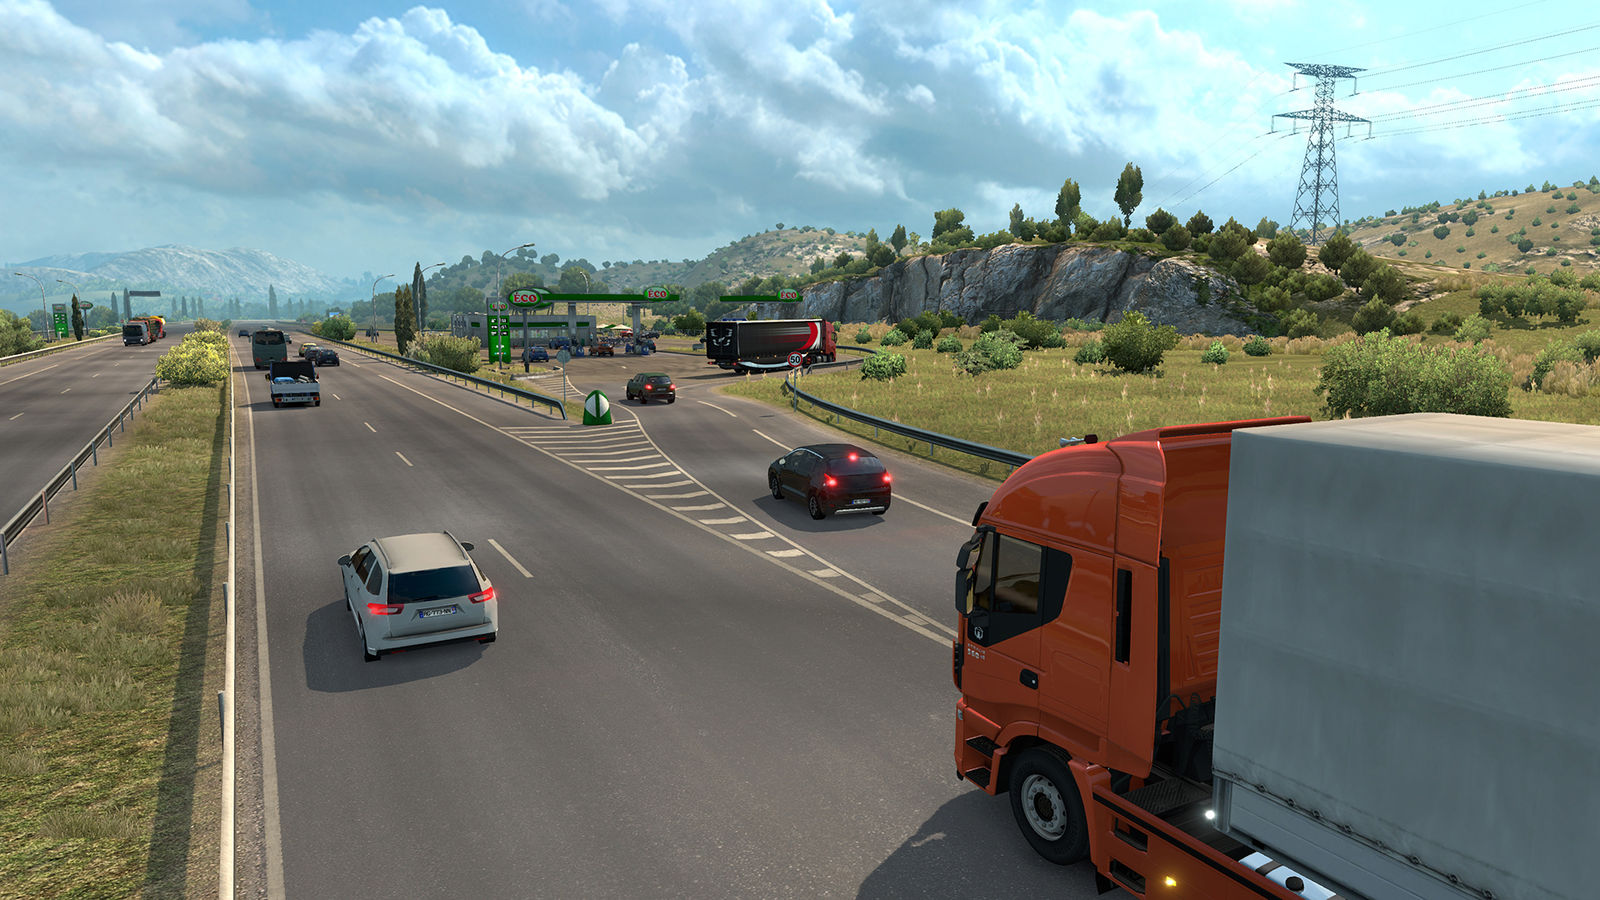 Euro Truck Simulator 2 - Vive la France! (Steam) RU/CIS